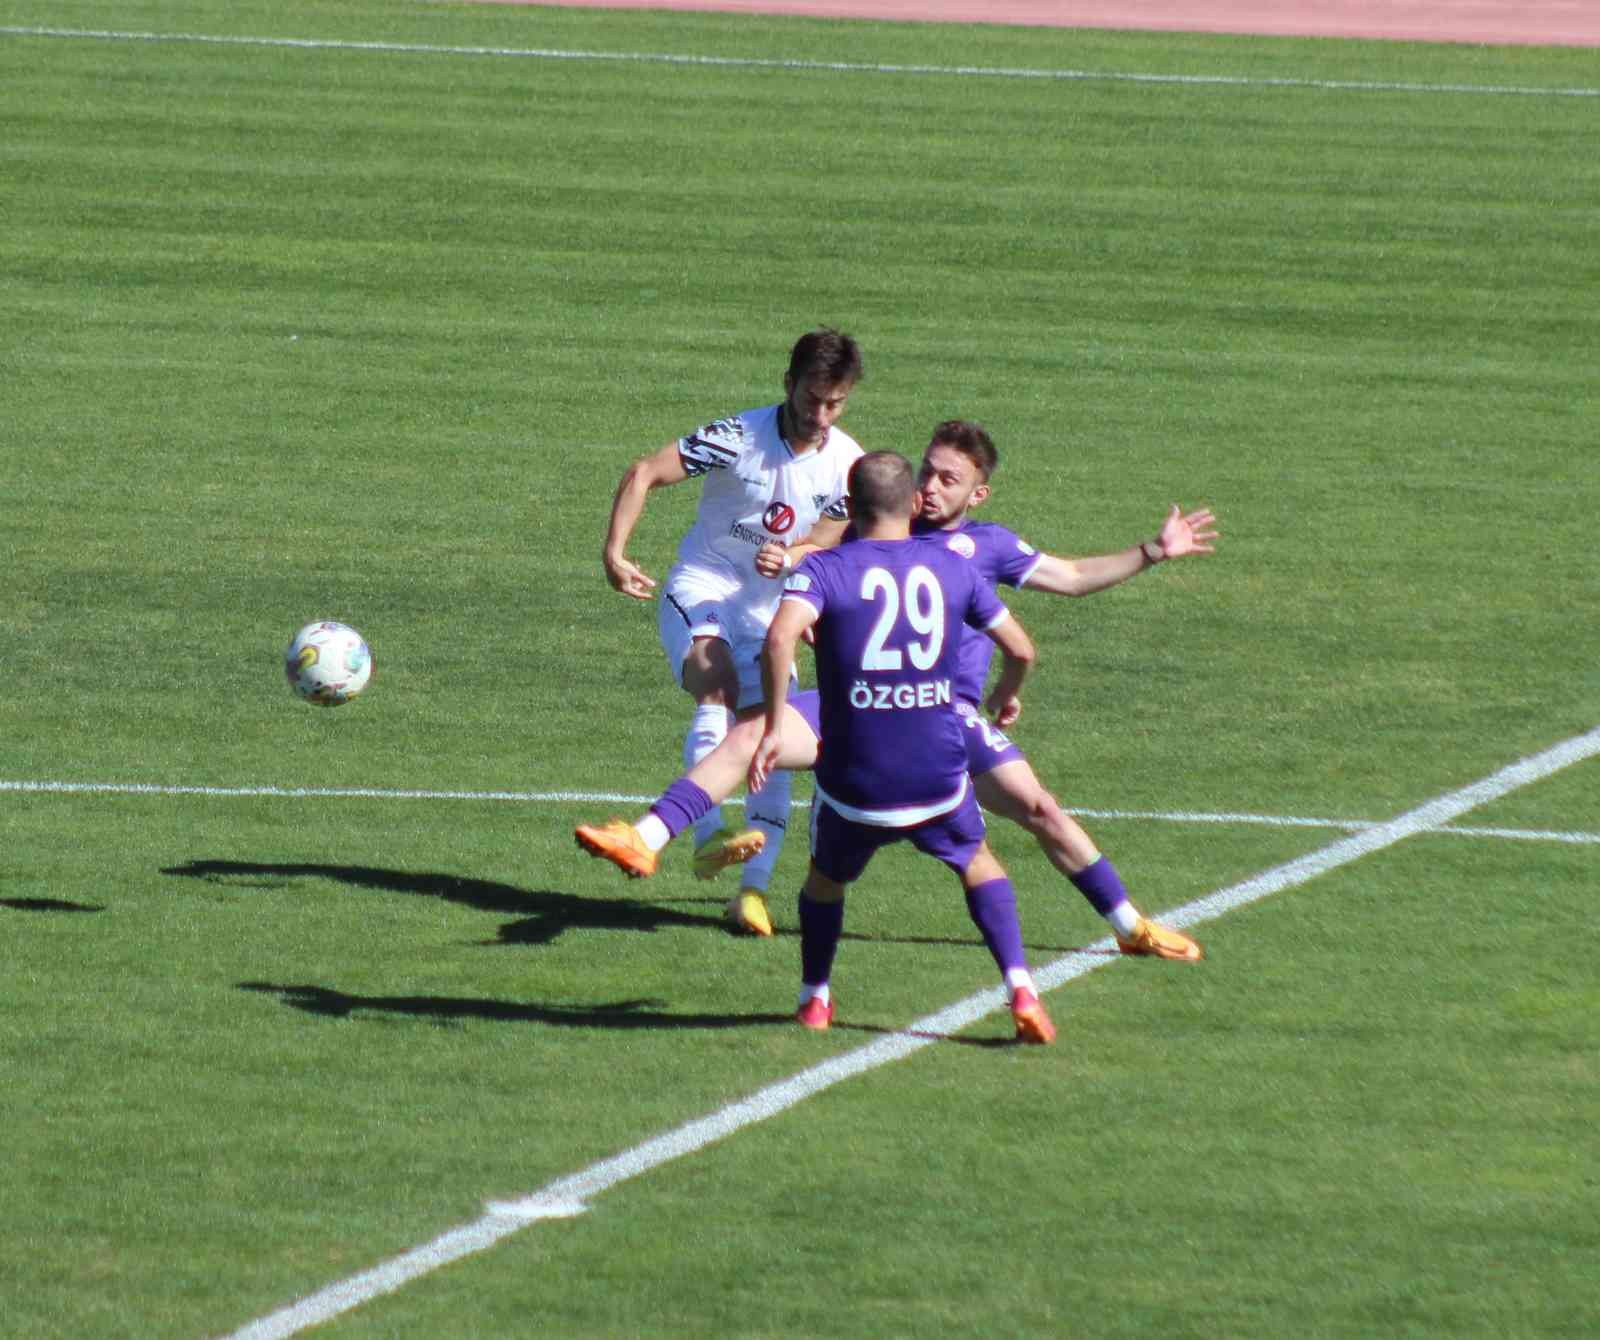 Ziraat Türkiye Kupası: Kırklarelispor: 2 - 52 Orduspor Fk: 0